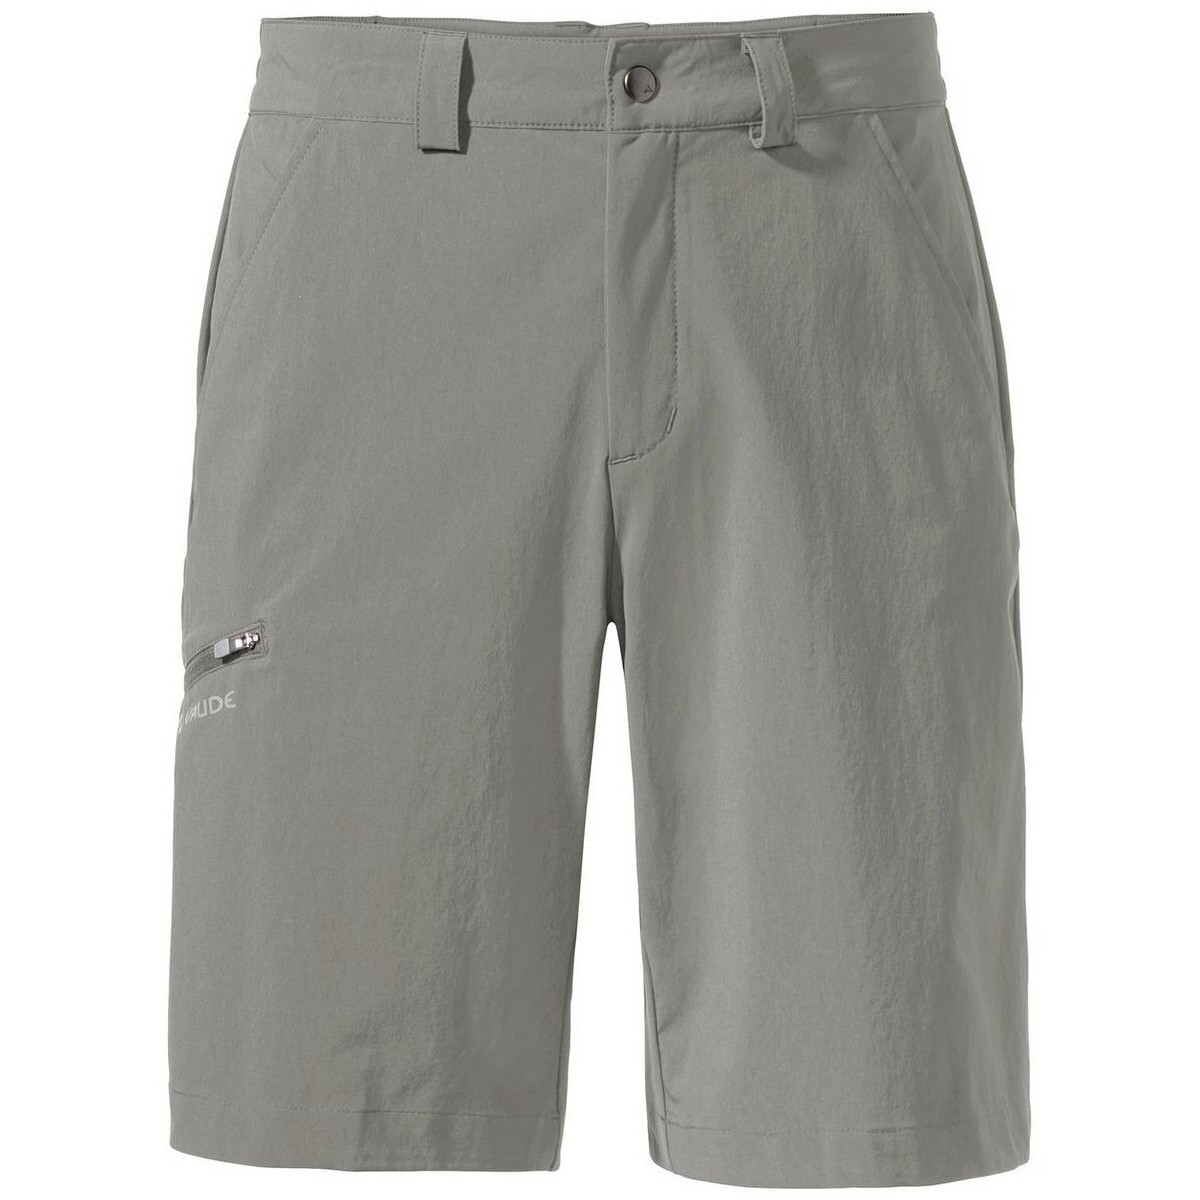 Vêtements Homme Shorts / Bermudas Vaude  Gris